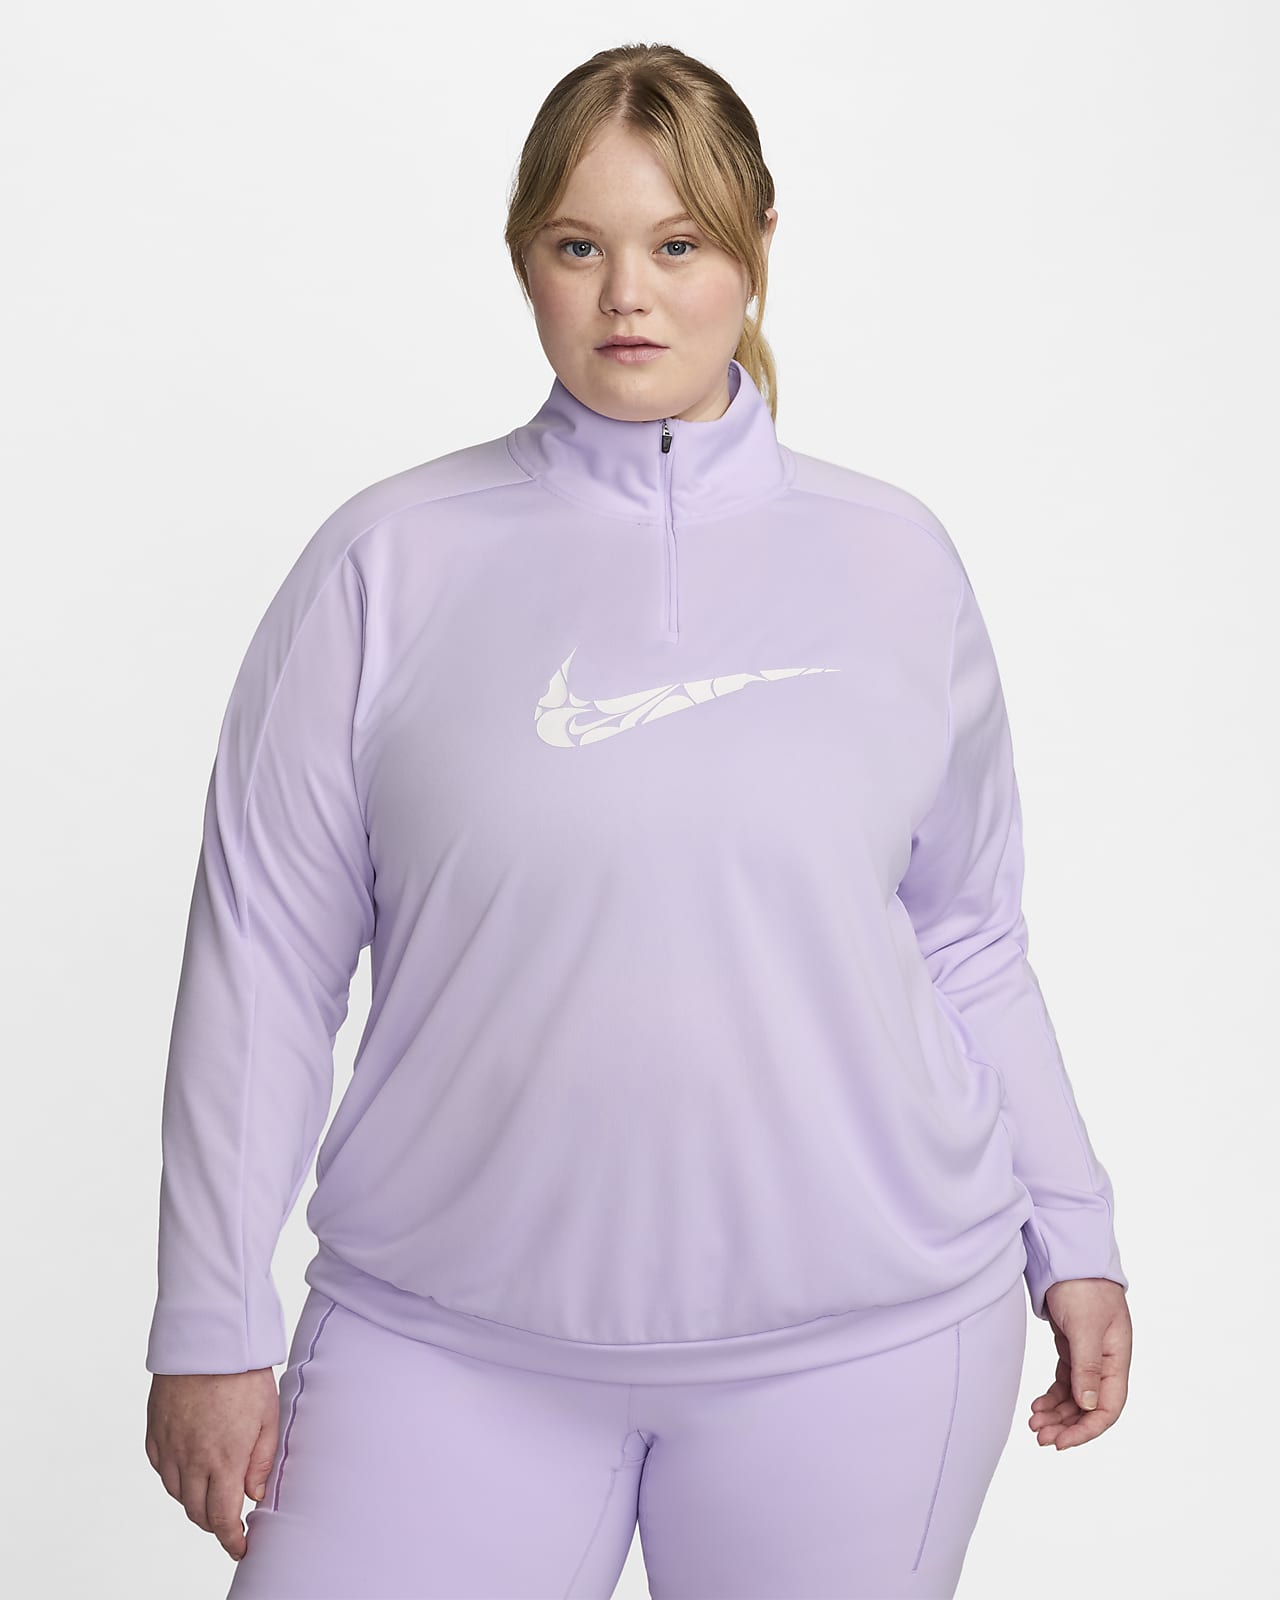 Γυναικεία ενδιάμεση μπλούζα Dri-FIT με φερμουάρ στο 1/4 του μήκους Nike Swoosh (μεγάλα μεγέθη)